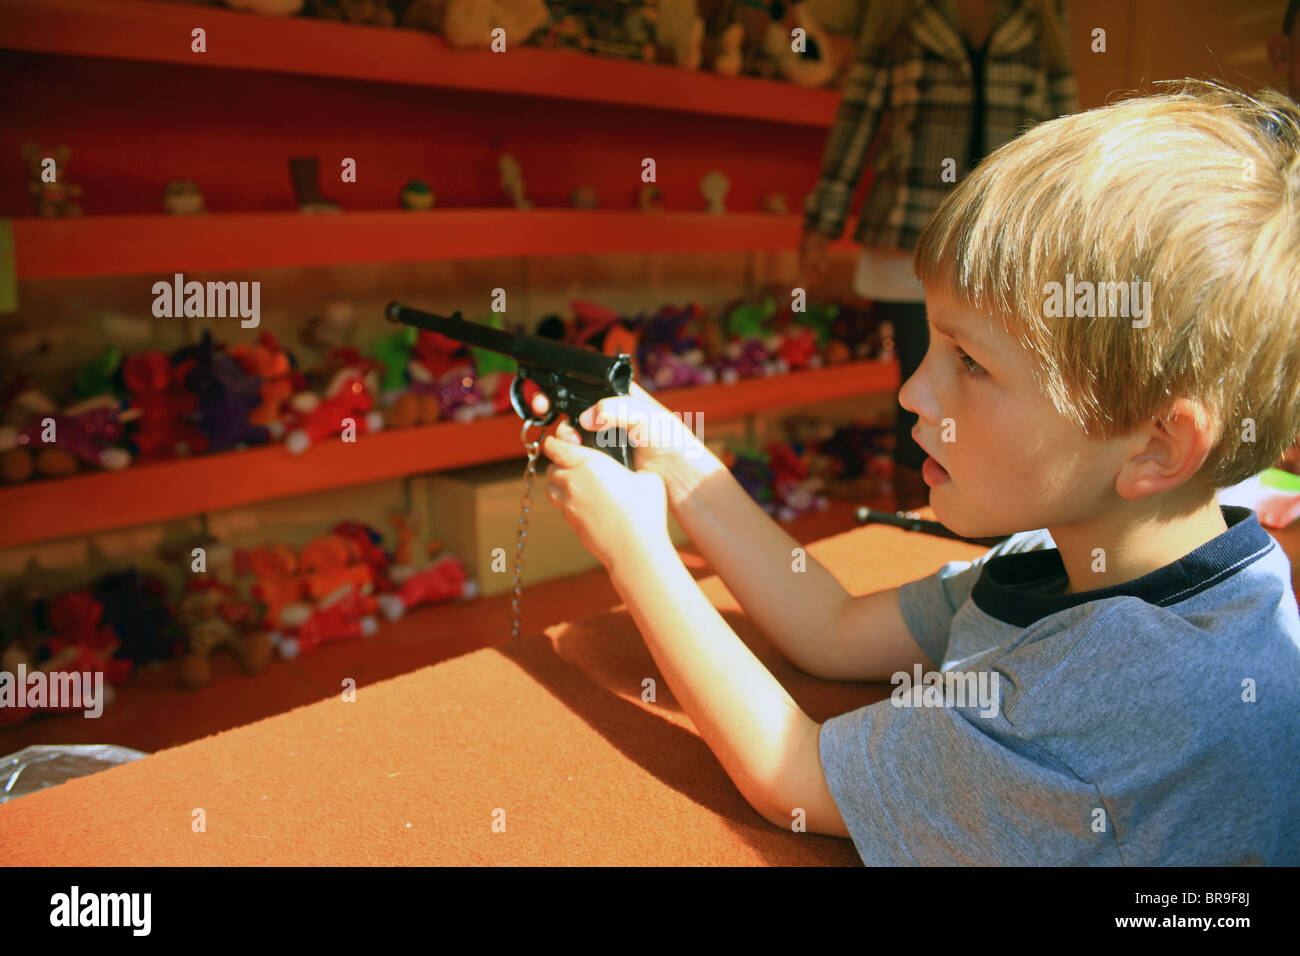 Garçon avec un pistolet de tir dans un jeu d'arcade à Challock Goose Fair, Challock, Ashford, Kent, Angleterre, Royaume-Uni, Europe Banque D'Images